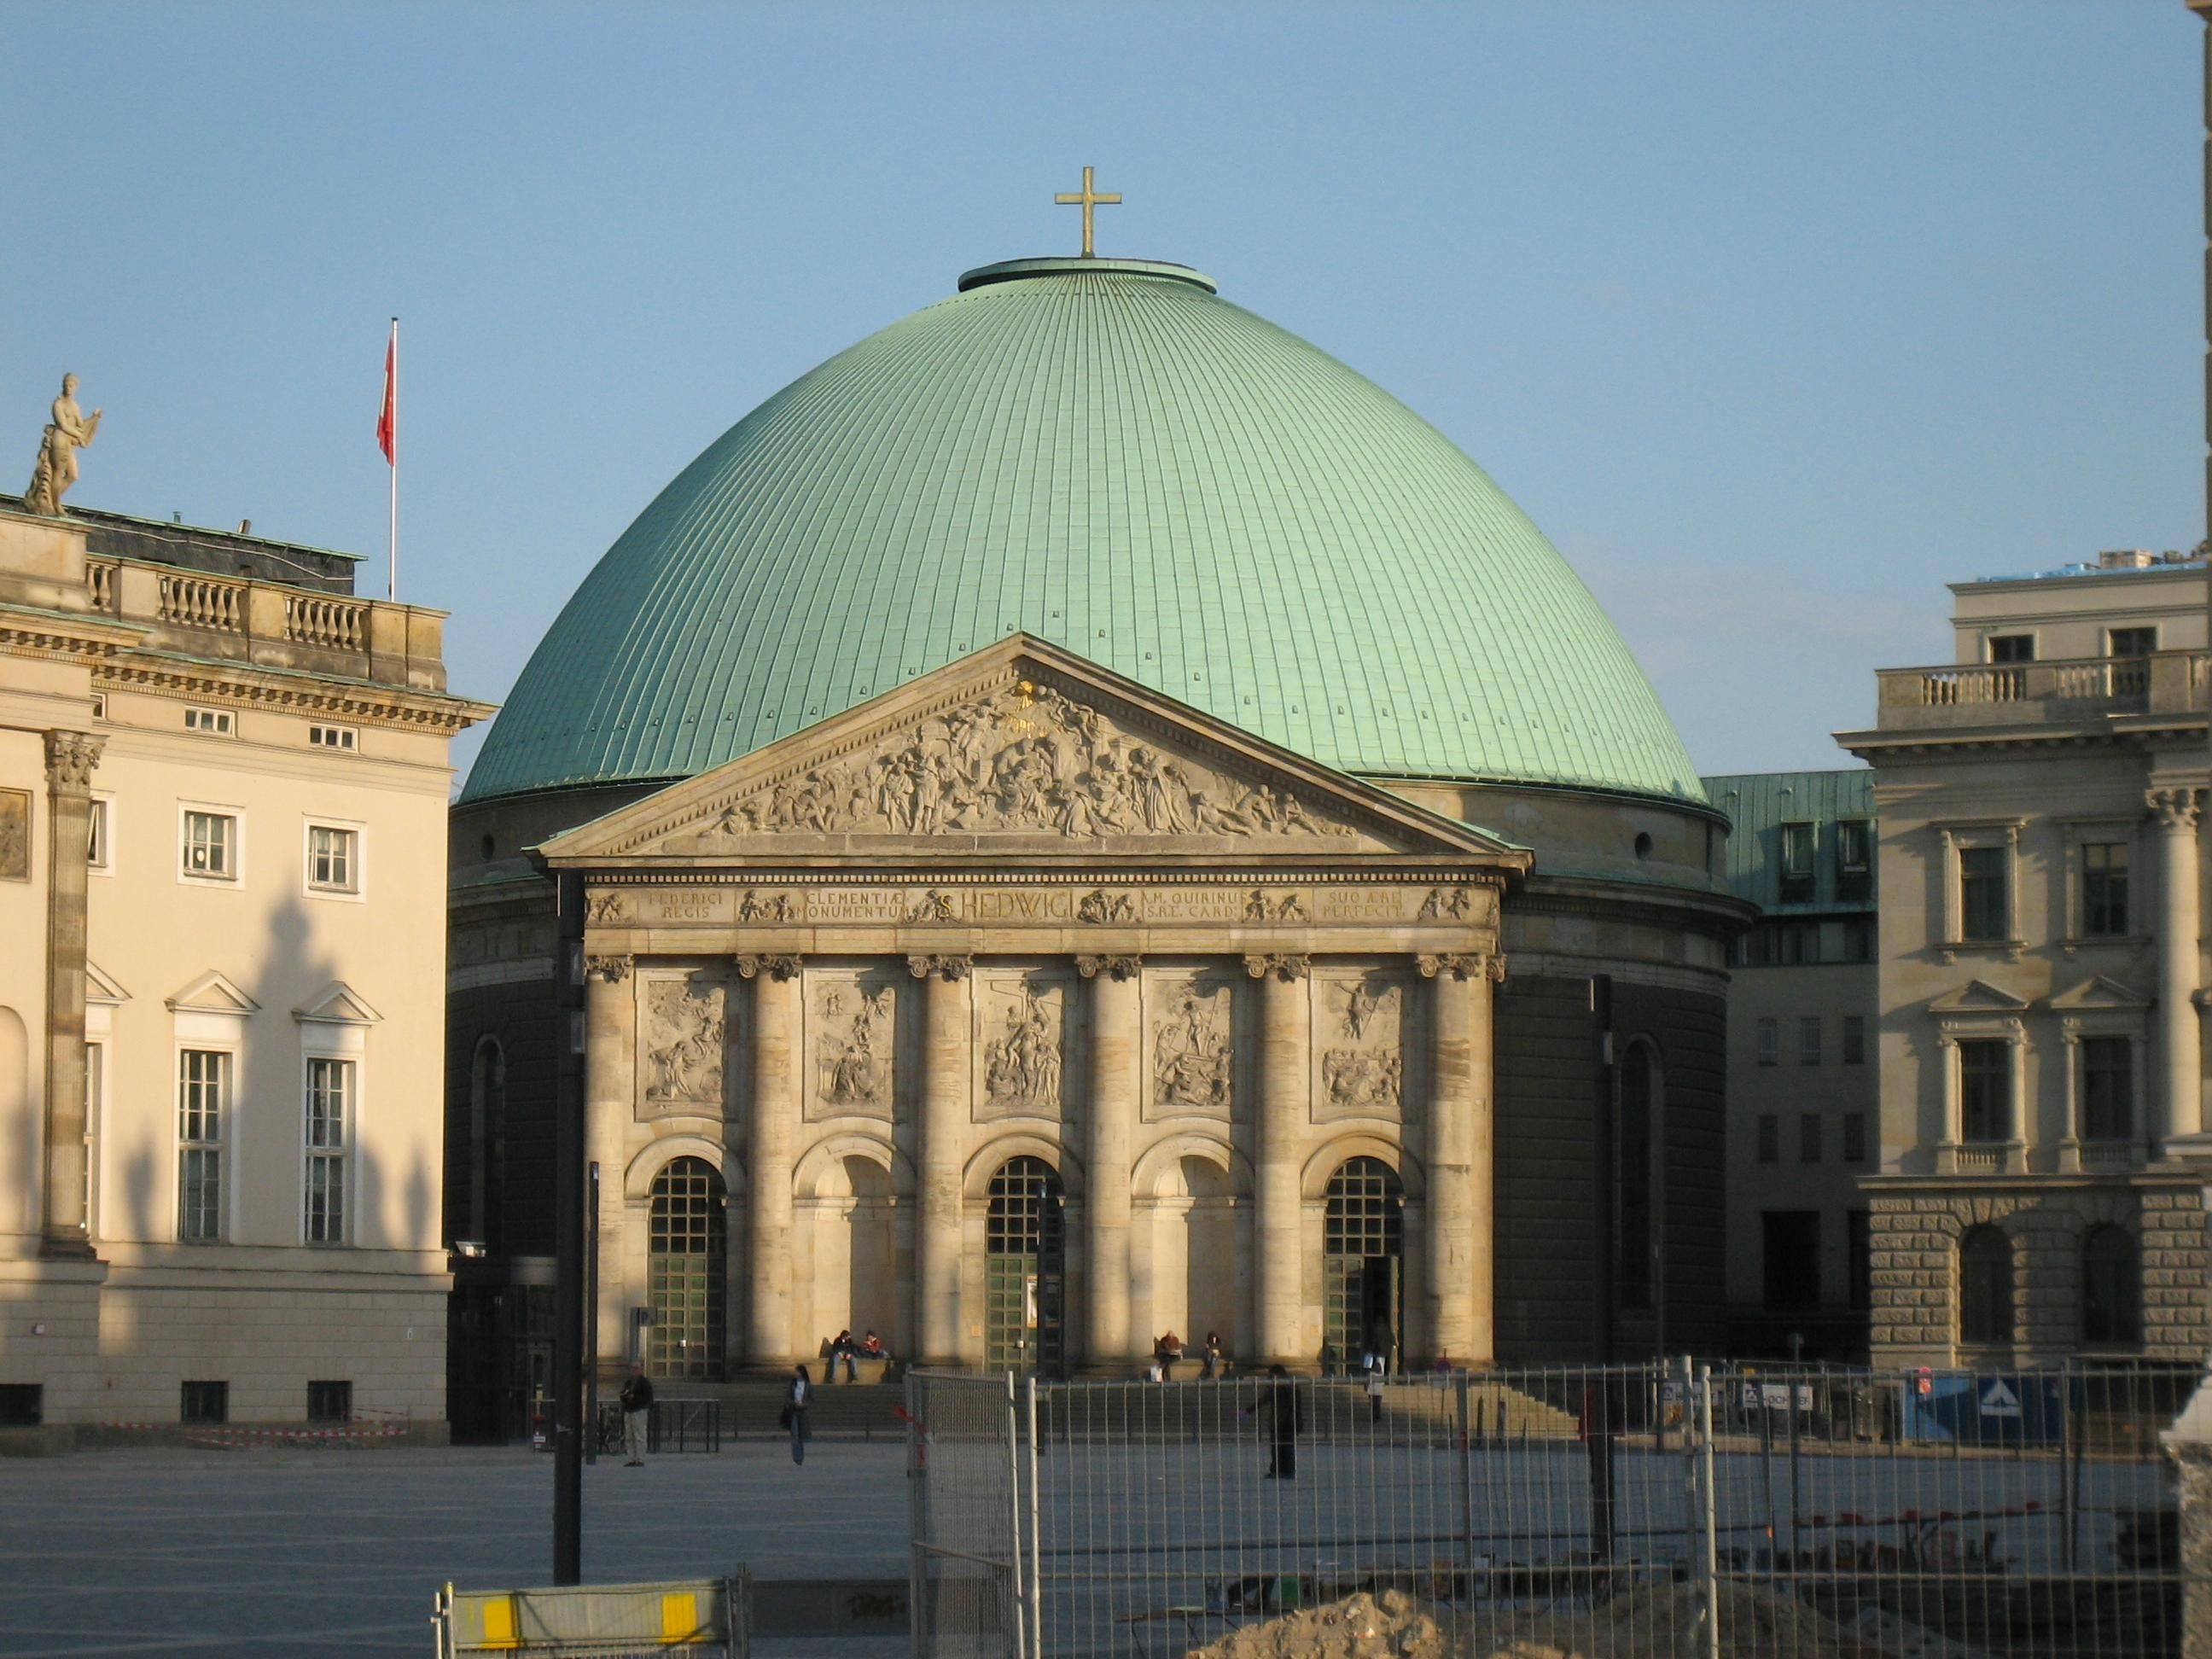 File:Church in Berlin.jpg - Wikimedia Commons